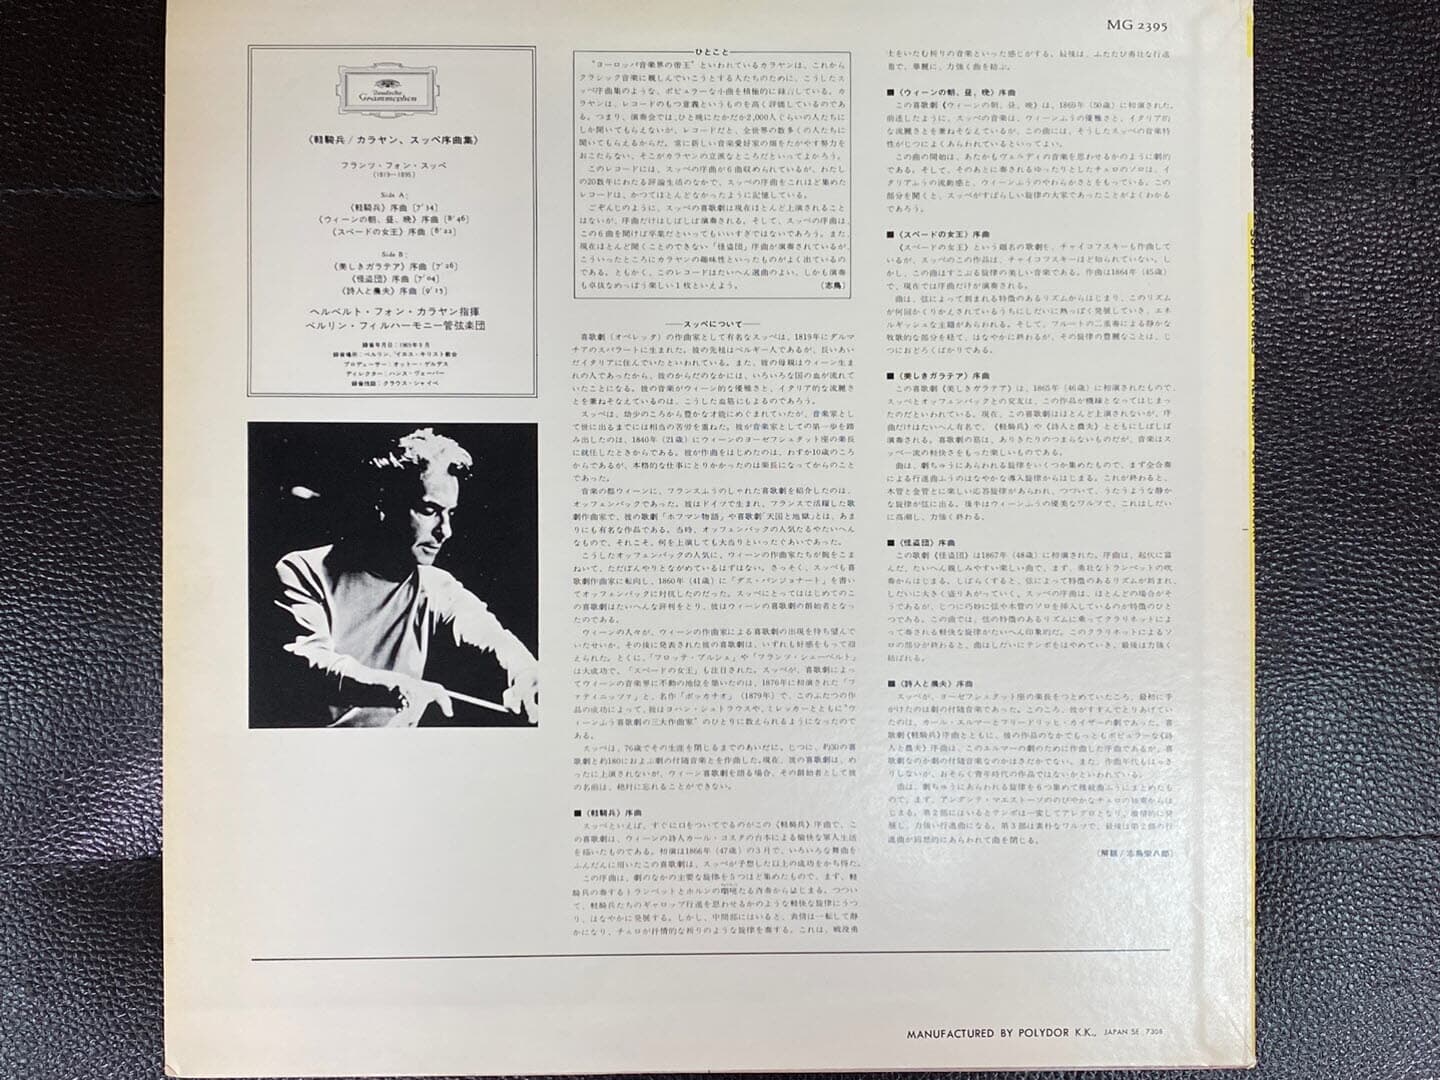 [LP] 카라얀 - Karajan - Suppe Ouverturen,Leichte Kavallerie LP [일본반]